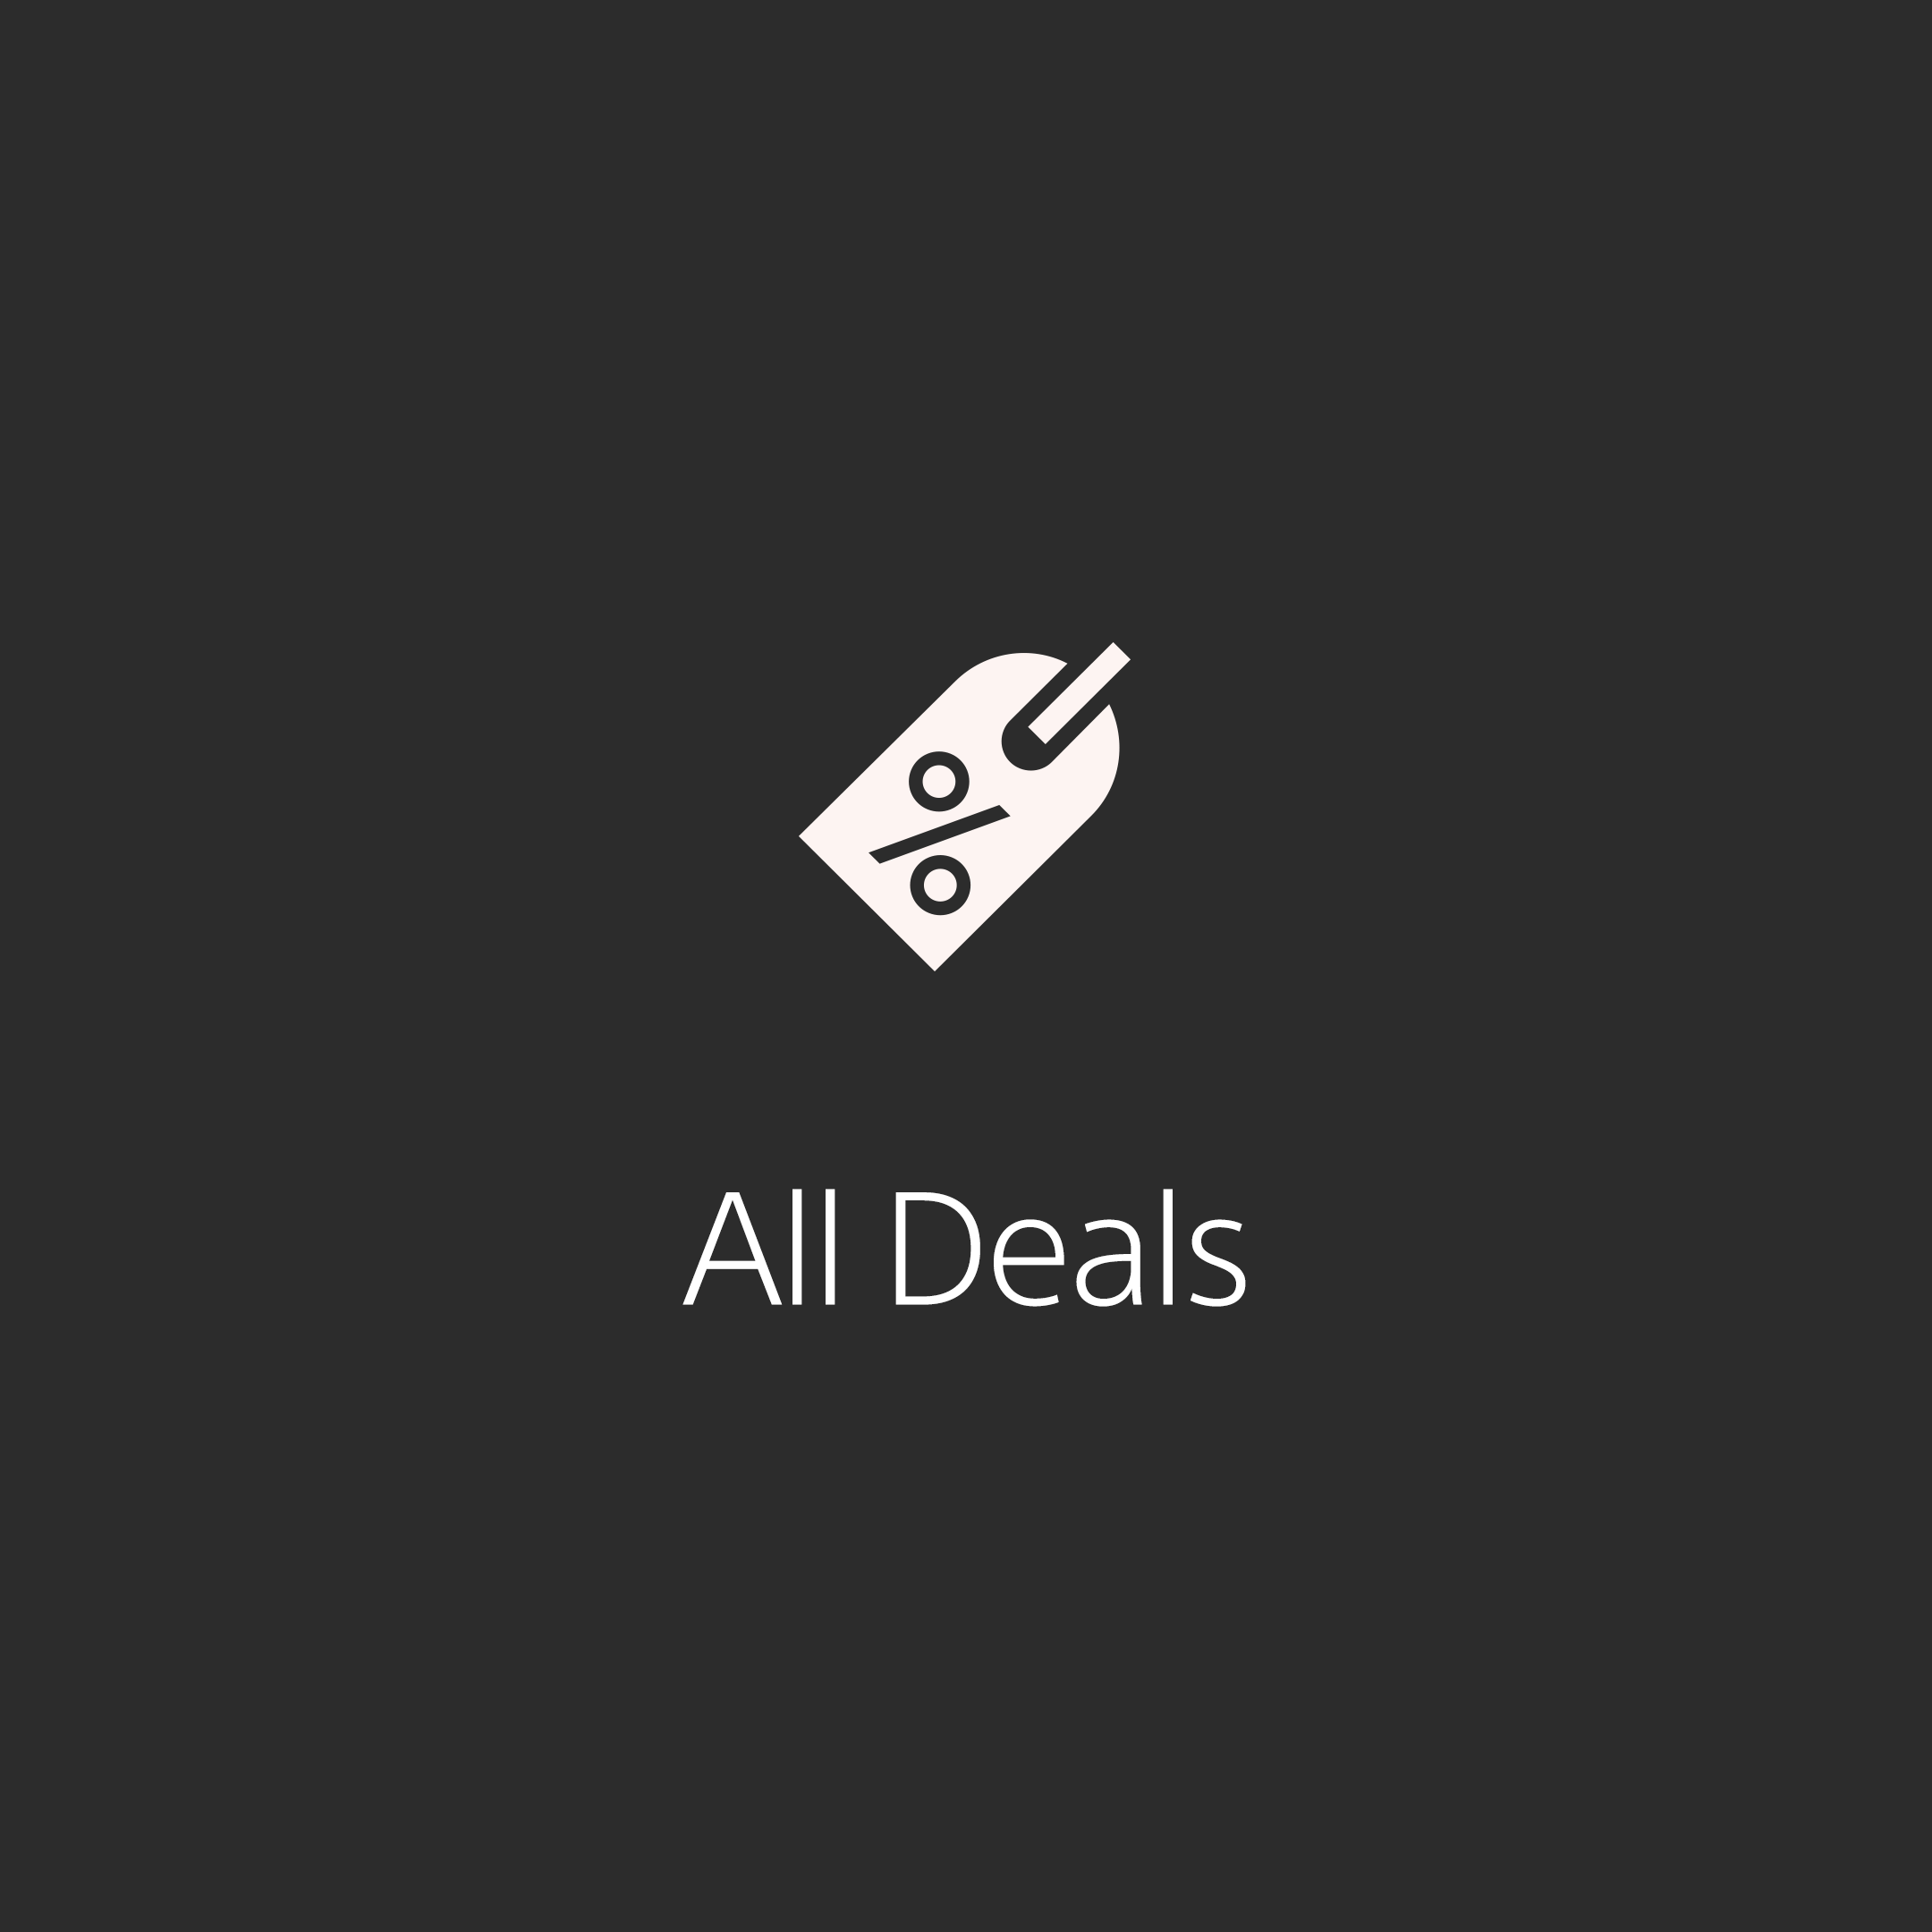 Deals - Quick Link - A